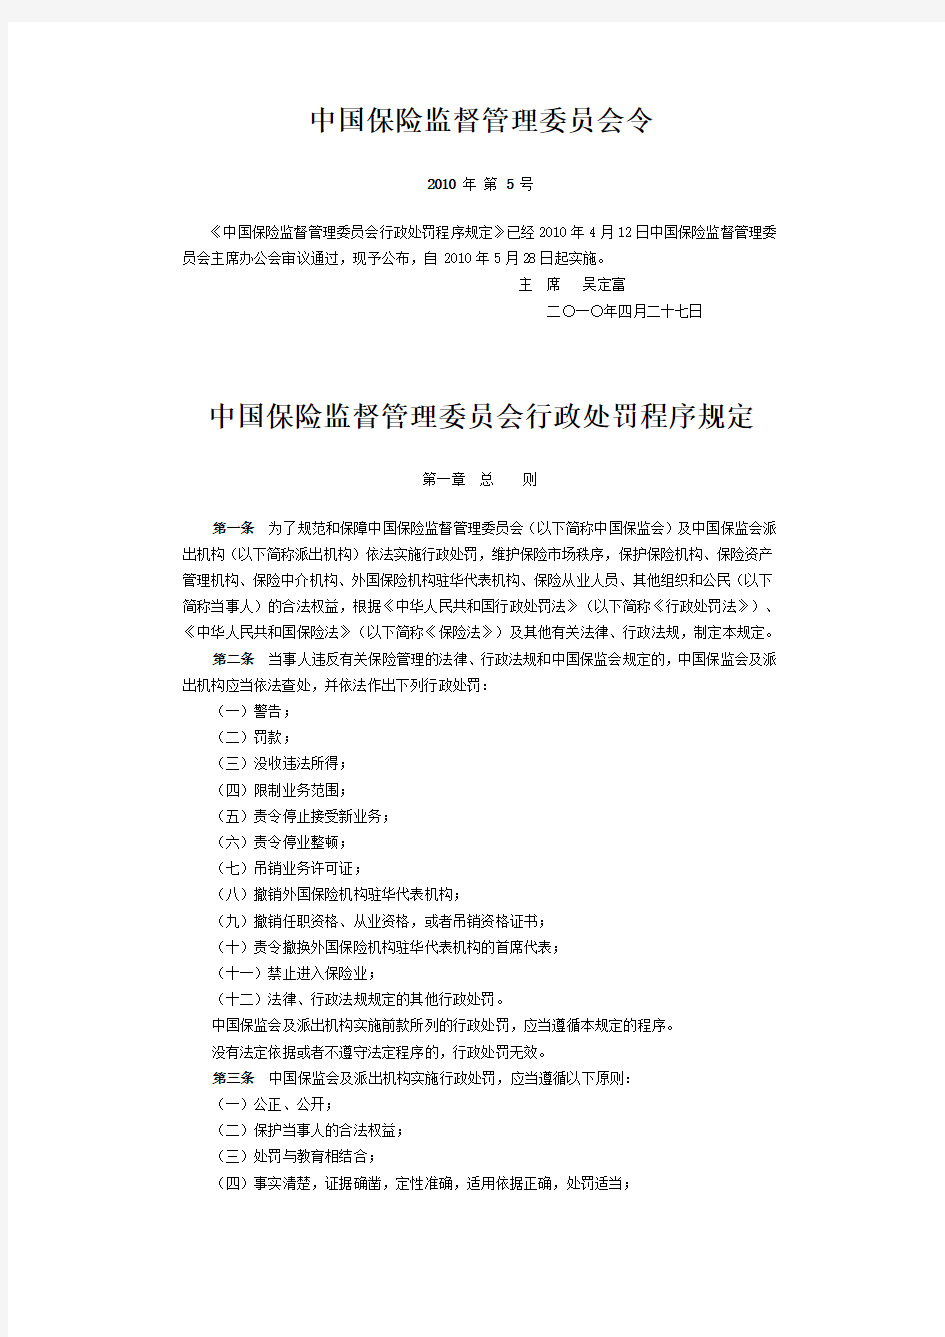 中国保险监督管理委员会行政处罚程序规定(保监会令2010年第5号)